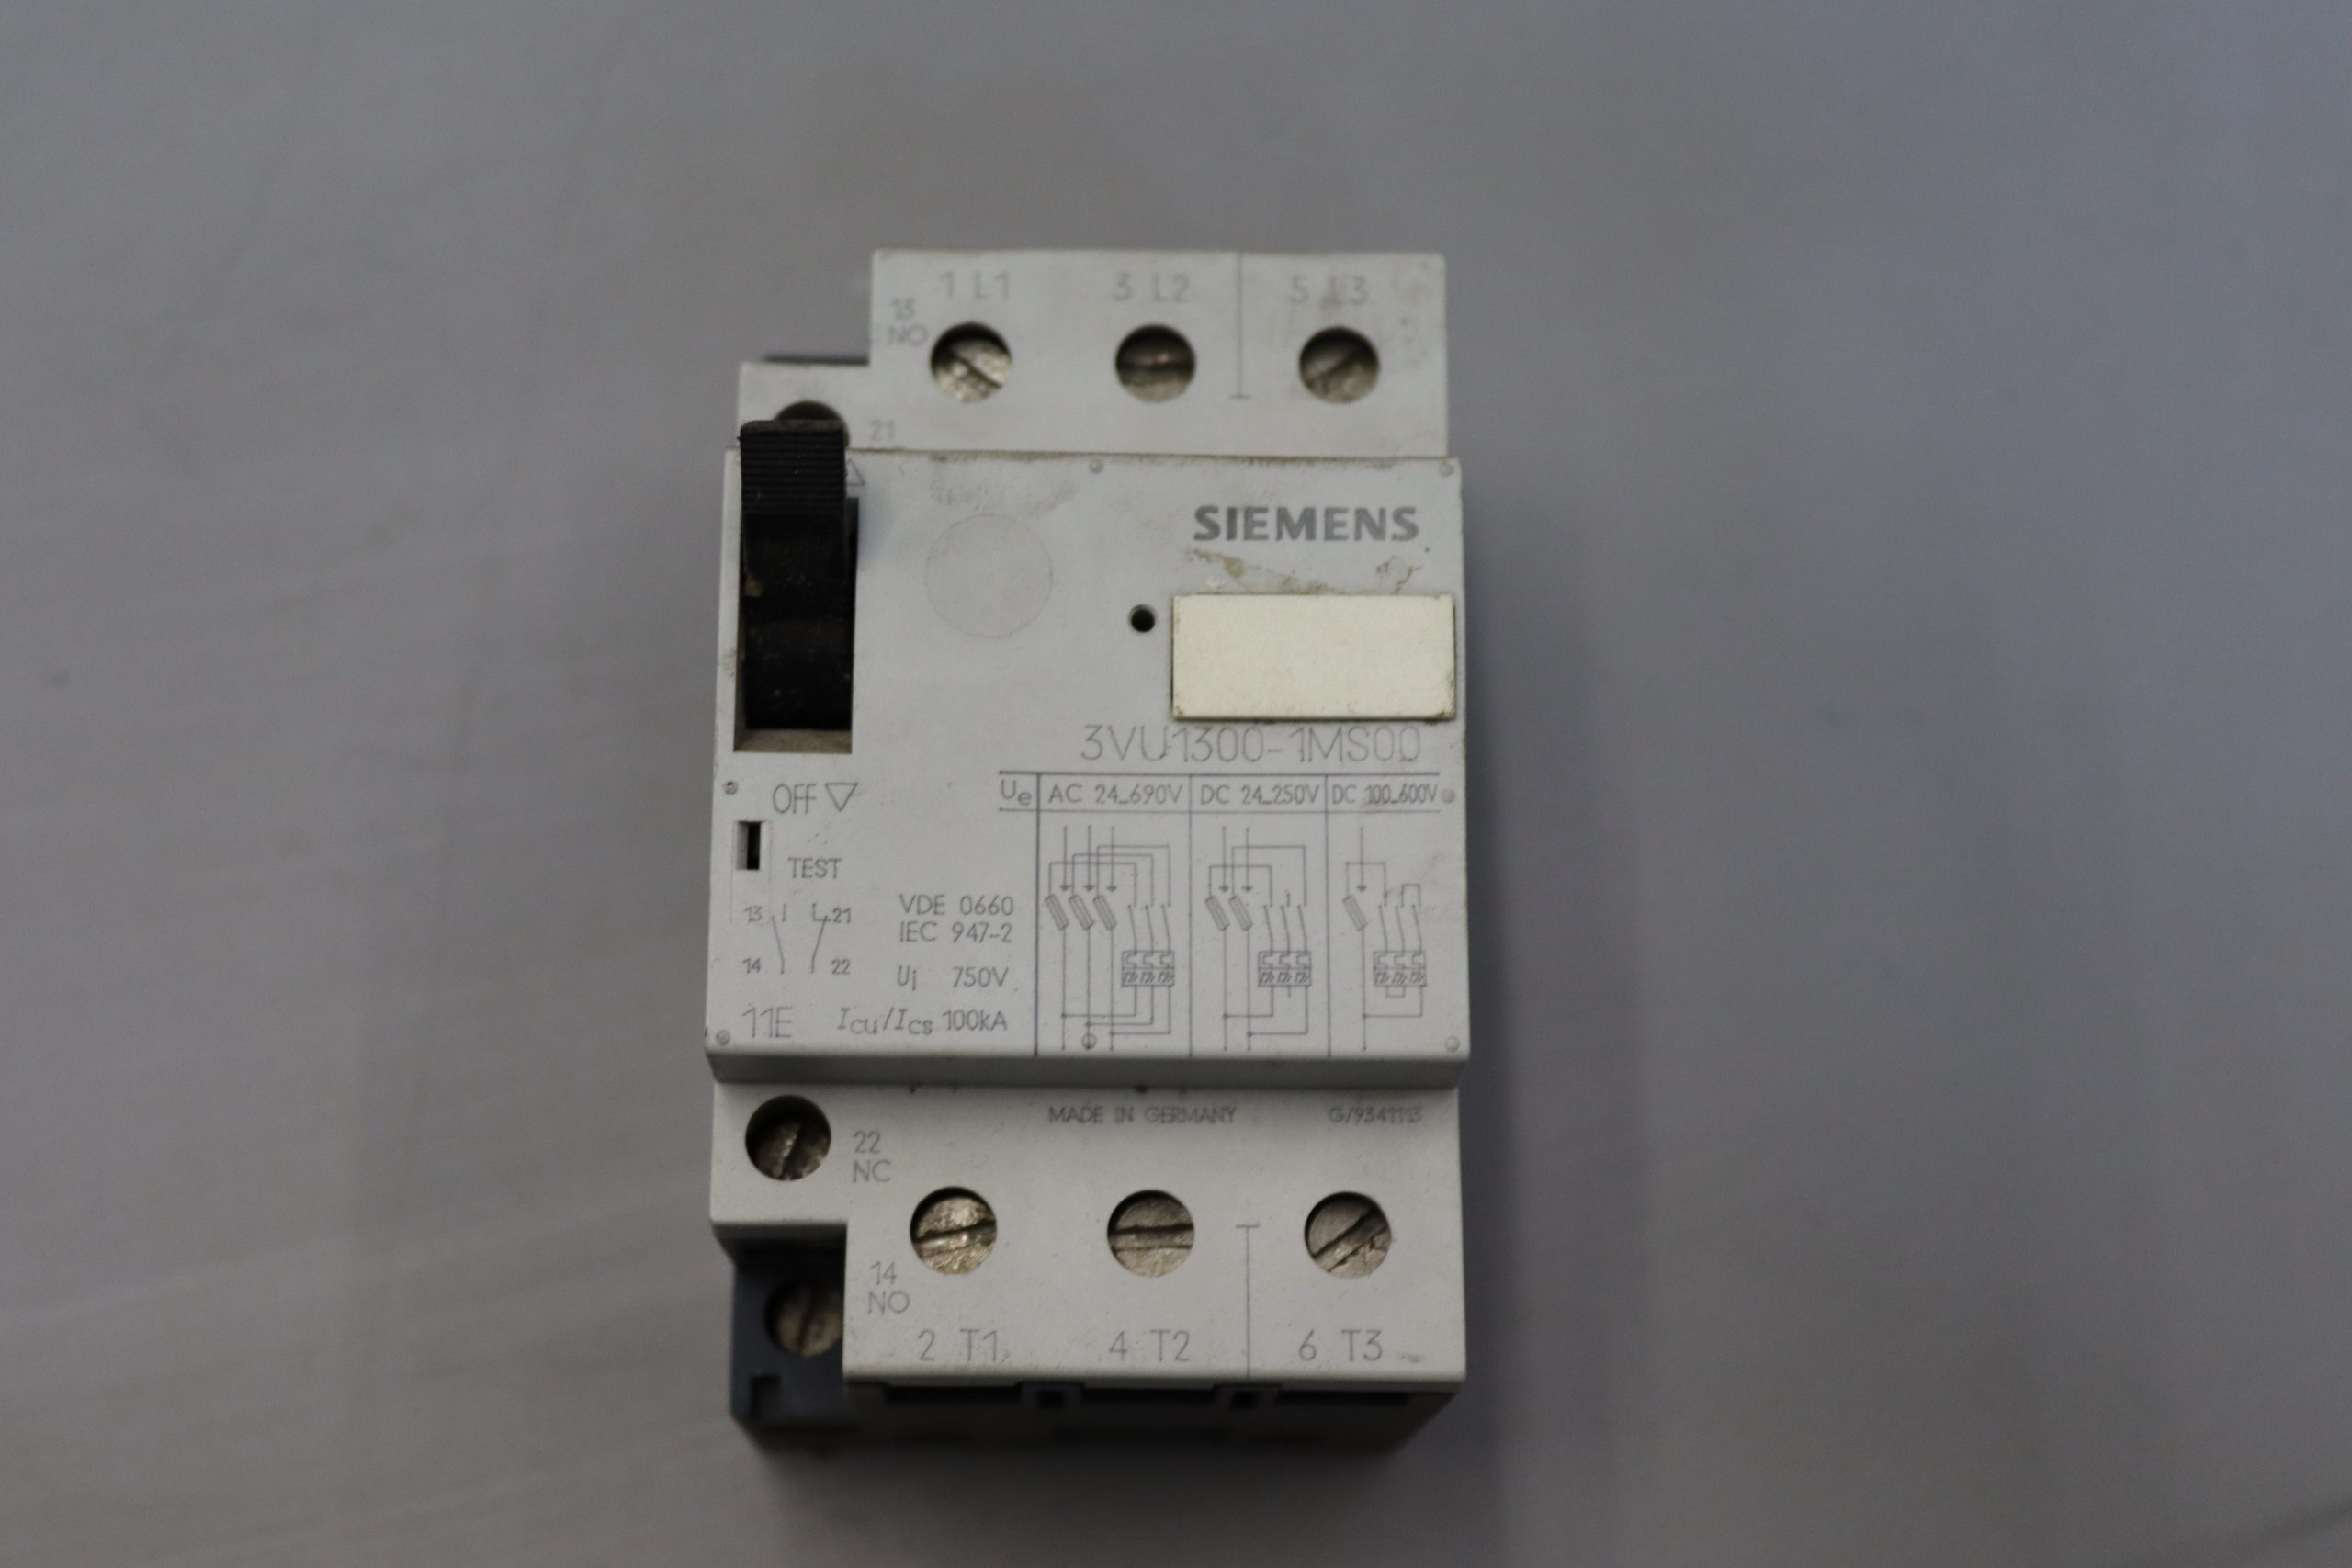 Siemens Leistungsschalter 3VU1300-1MS00